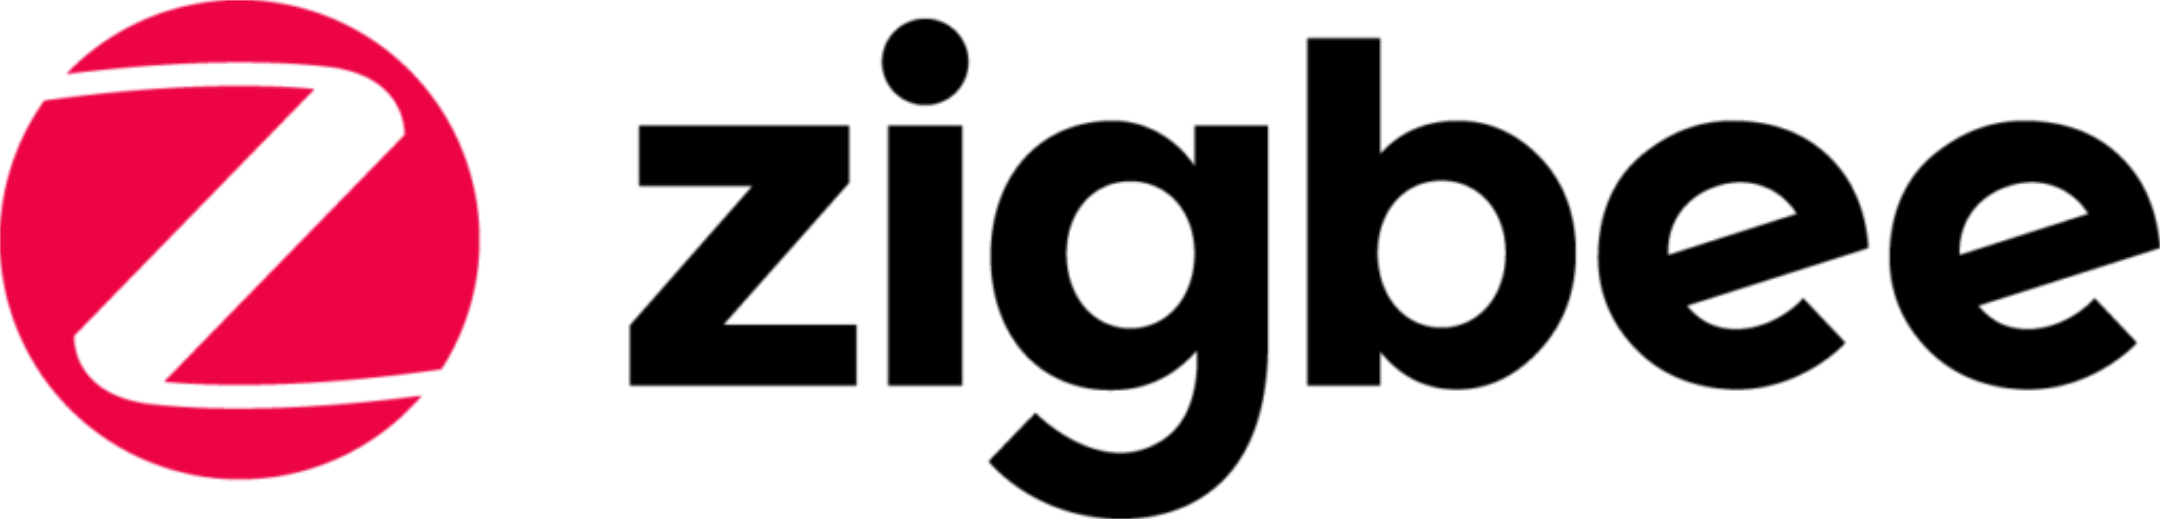 zigbee logo 1 - Zigbee Logo